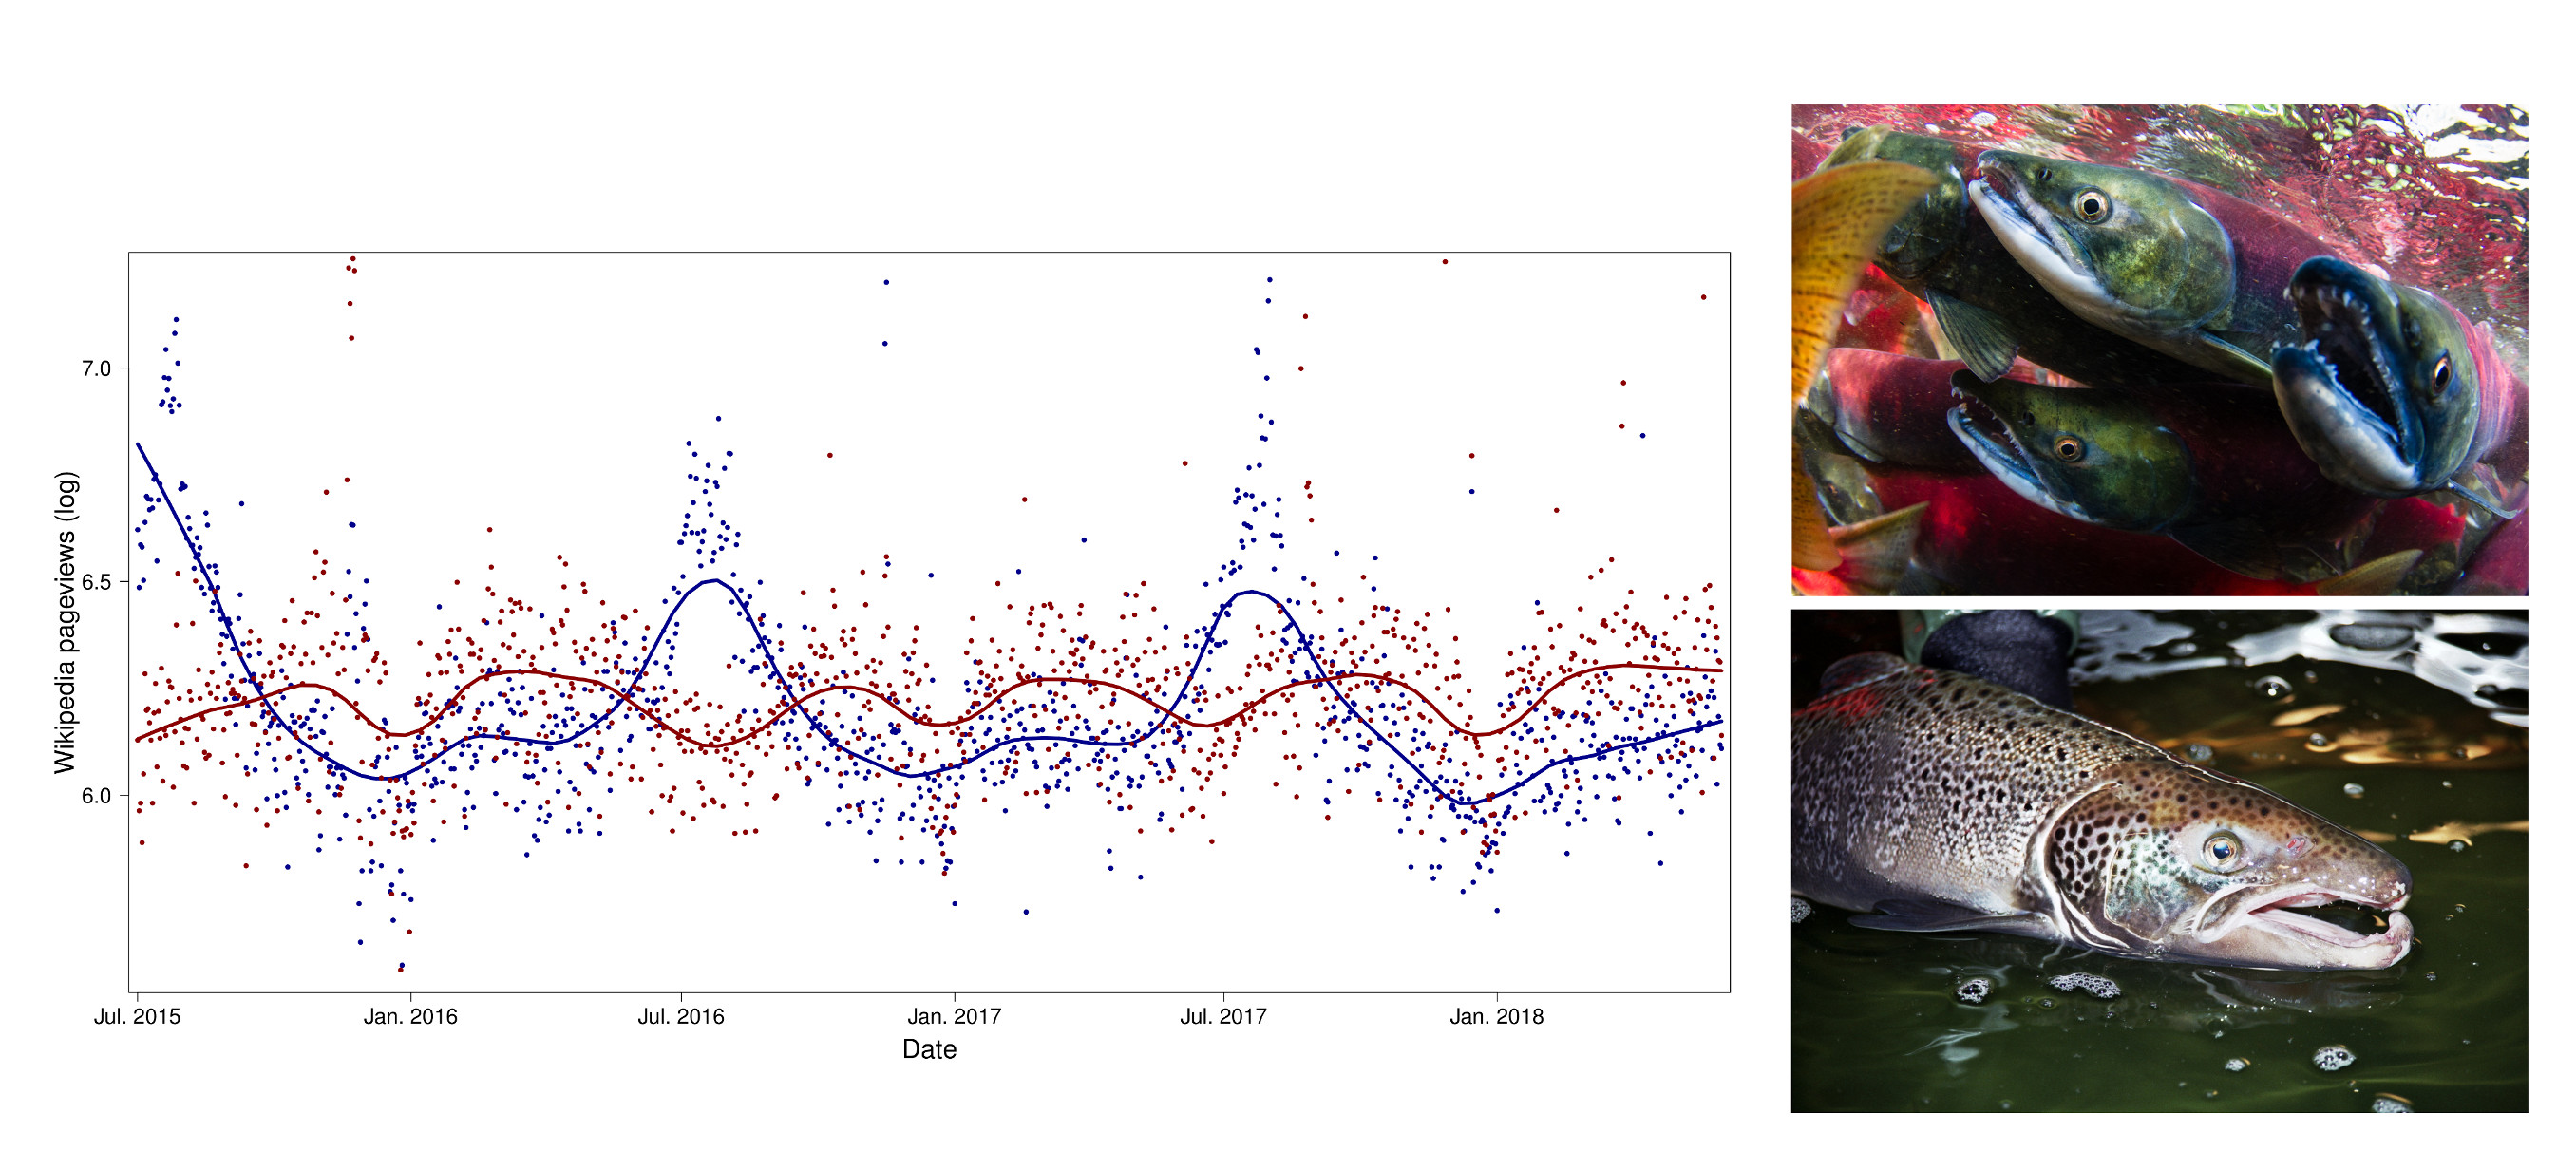 La popularité du saumon rouge (rouge) et du saumon de l’Atlantique (bleu) selon les pageviews de Wikipedia reflète leurs tendances de migration saisonnière 